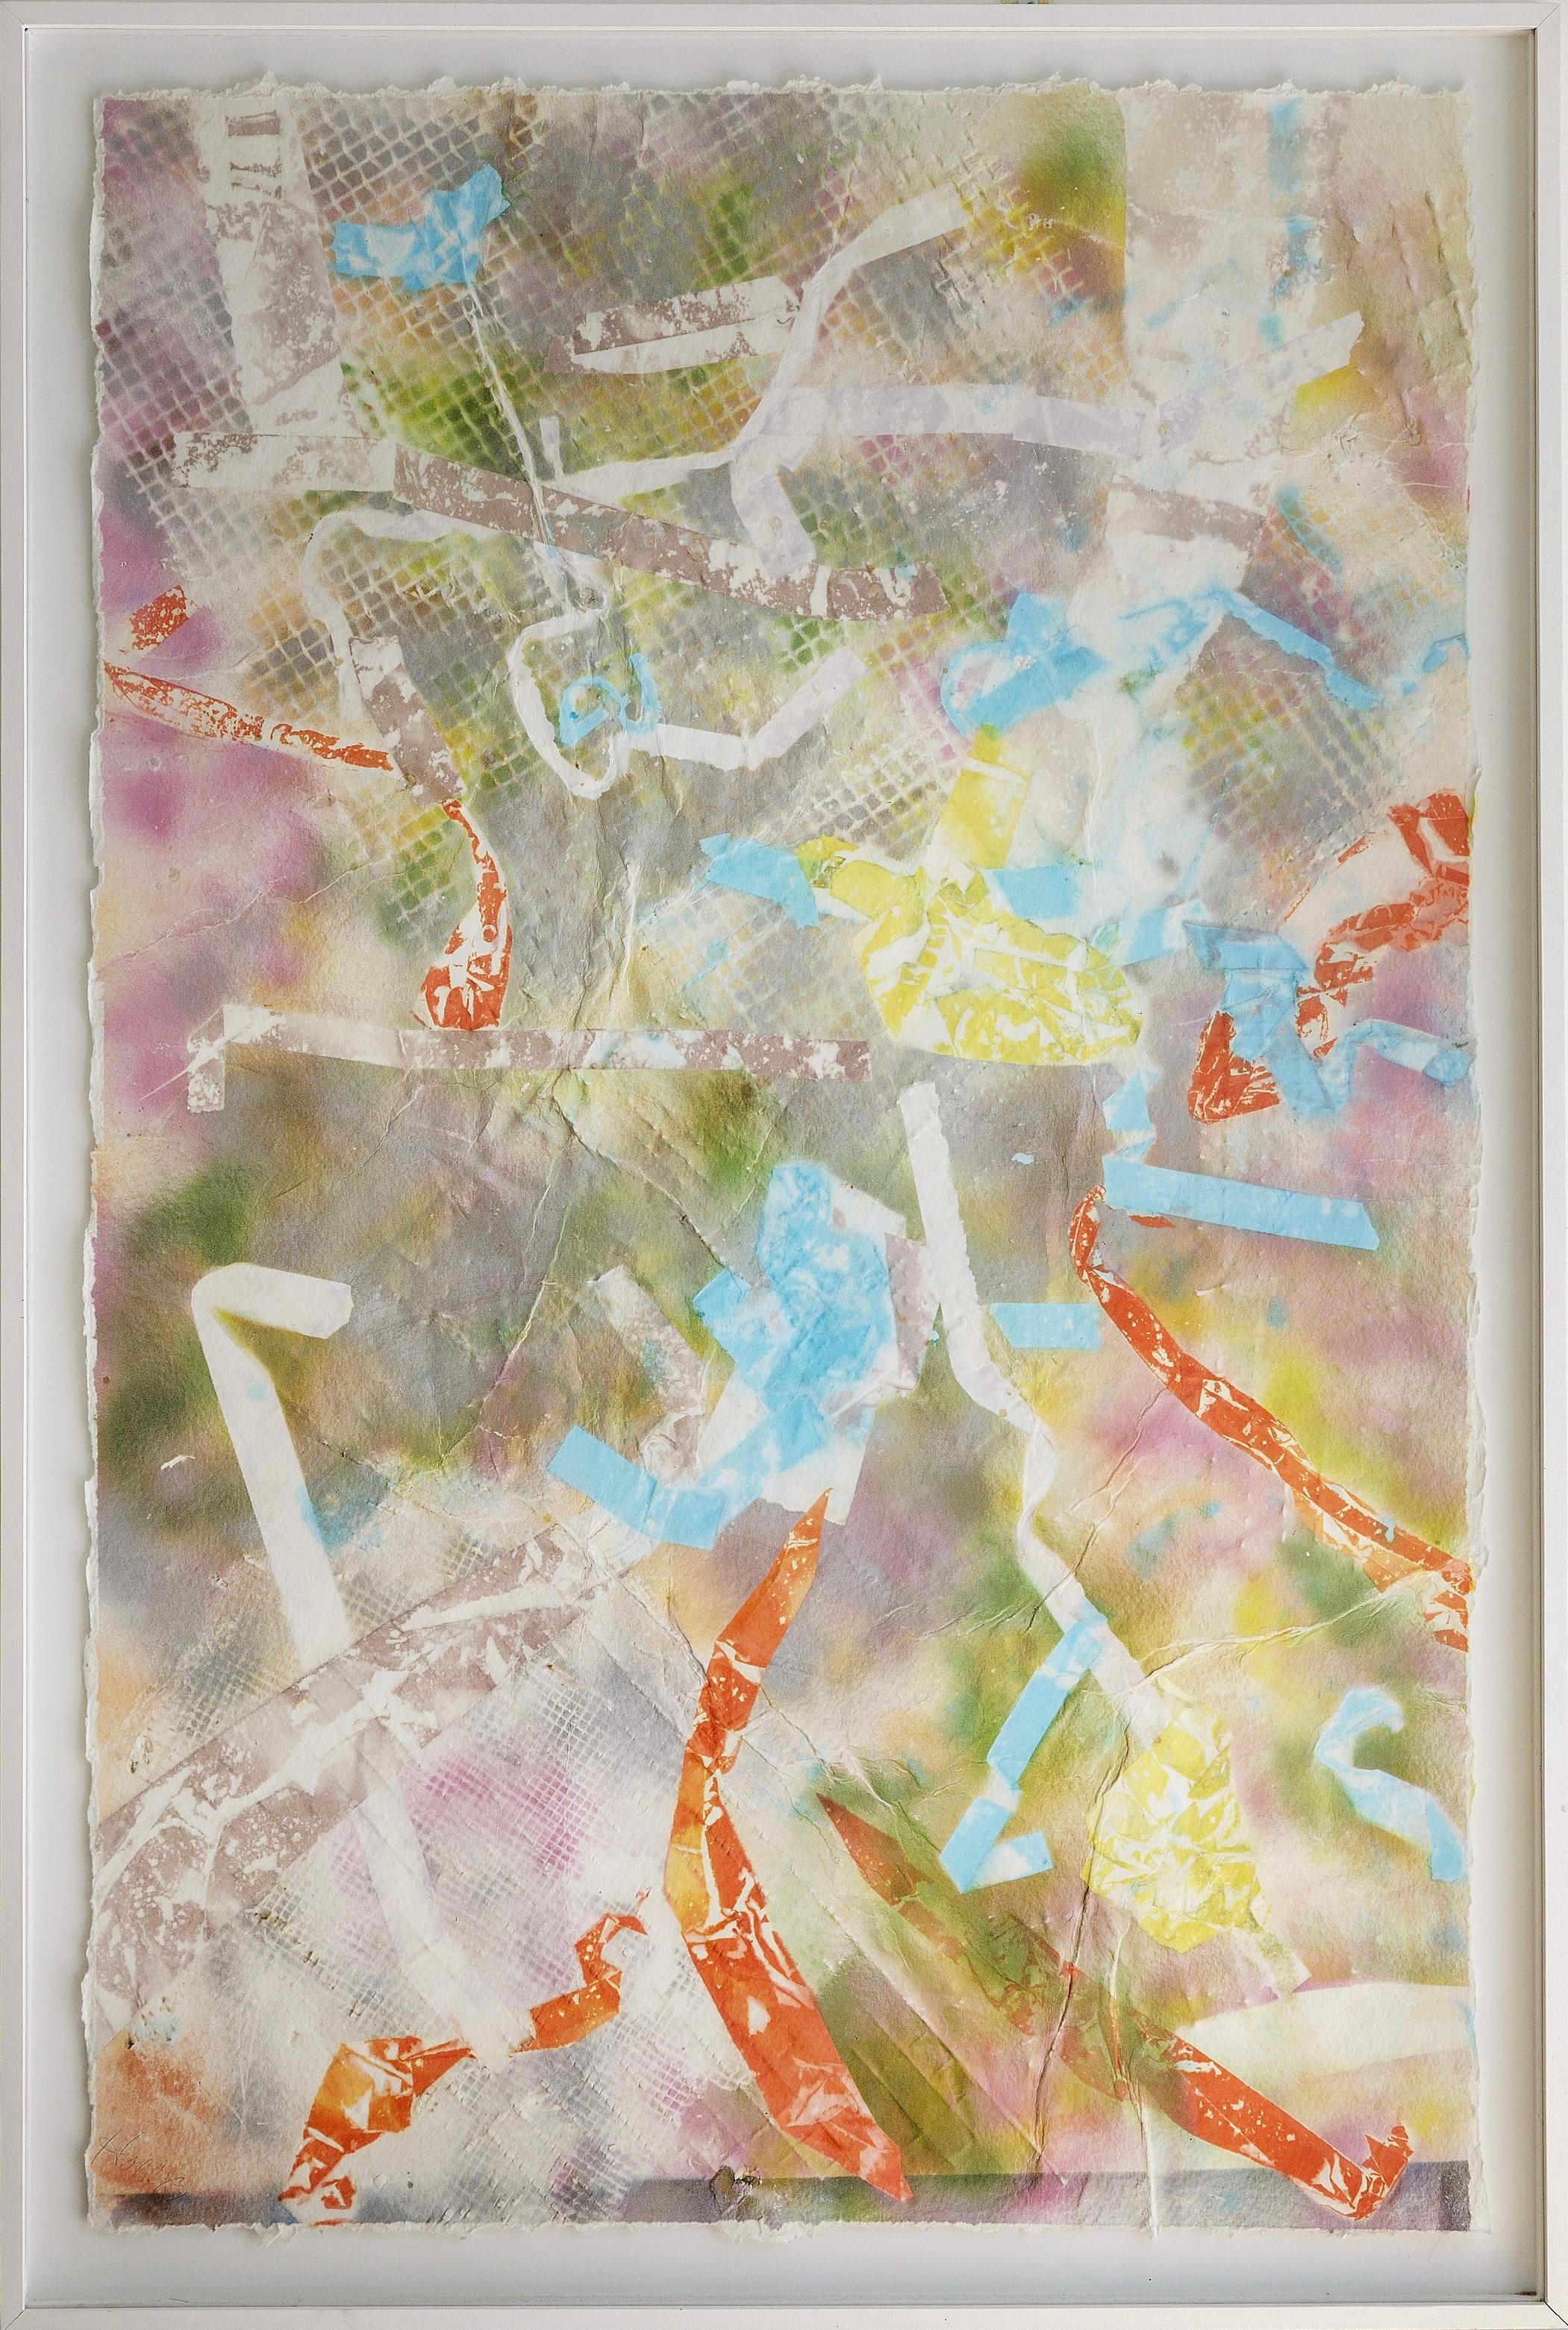 Dieses Gemälde der amerikanischen Künstlerin Martha Holden ist mit seinen übergroßen Dimensionen und seiner fröhlichen Komposition eine Rarität. Es handelt sich um ein zeitgenössisches abstraktes Werk, das den Betrachter mit einer lebhaften und